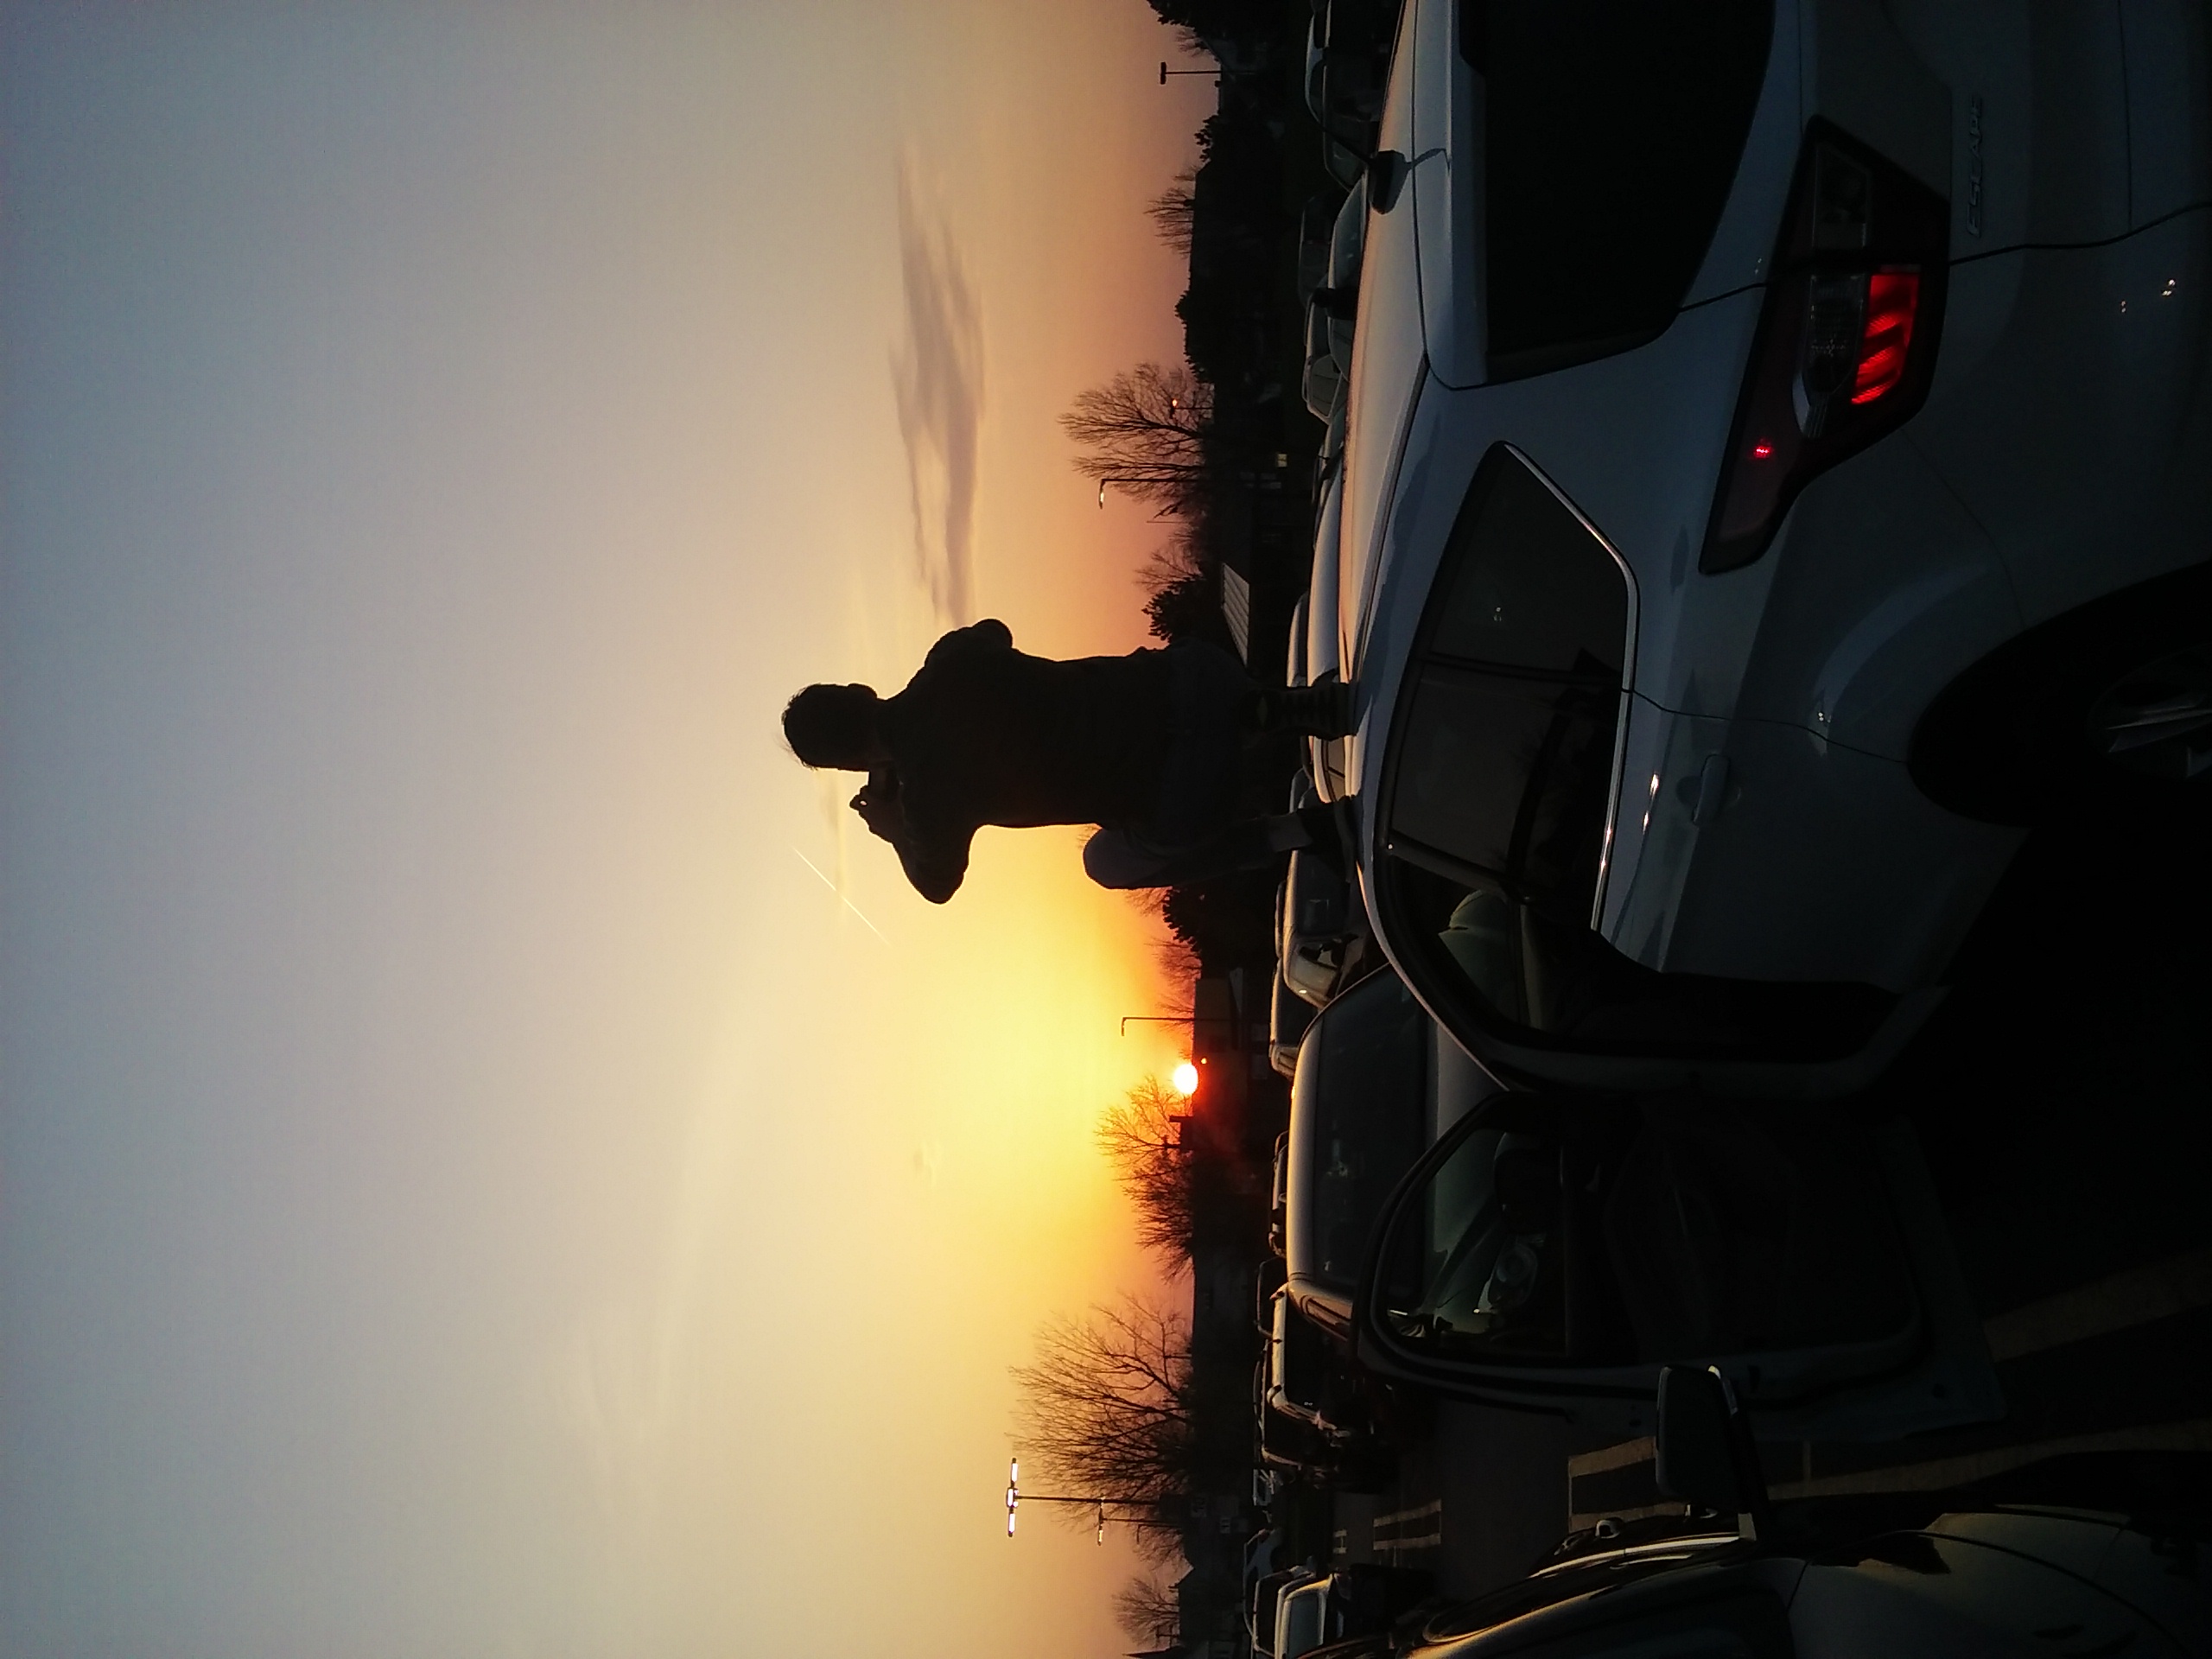 Kálmán a kocsi tetején naplementét fotóz. Vagy inkább nap-jobbra-mentét...